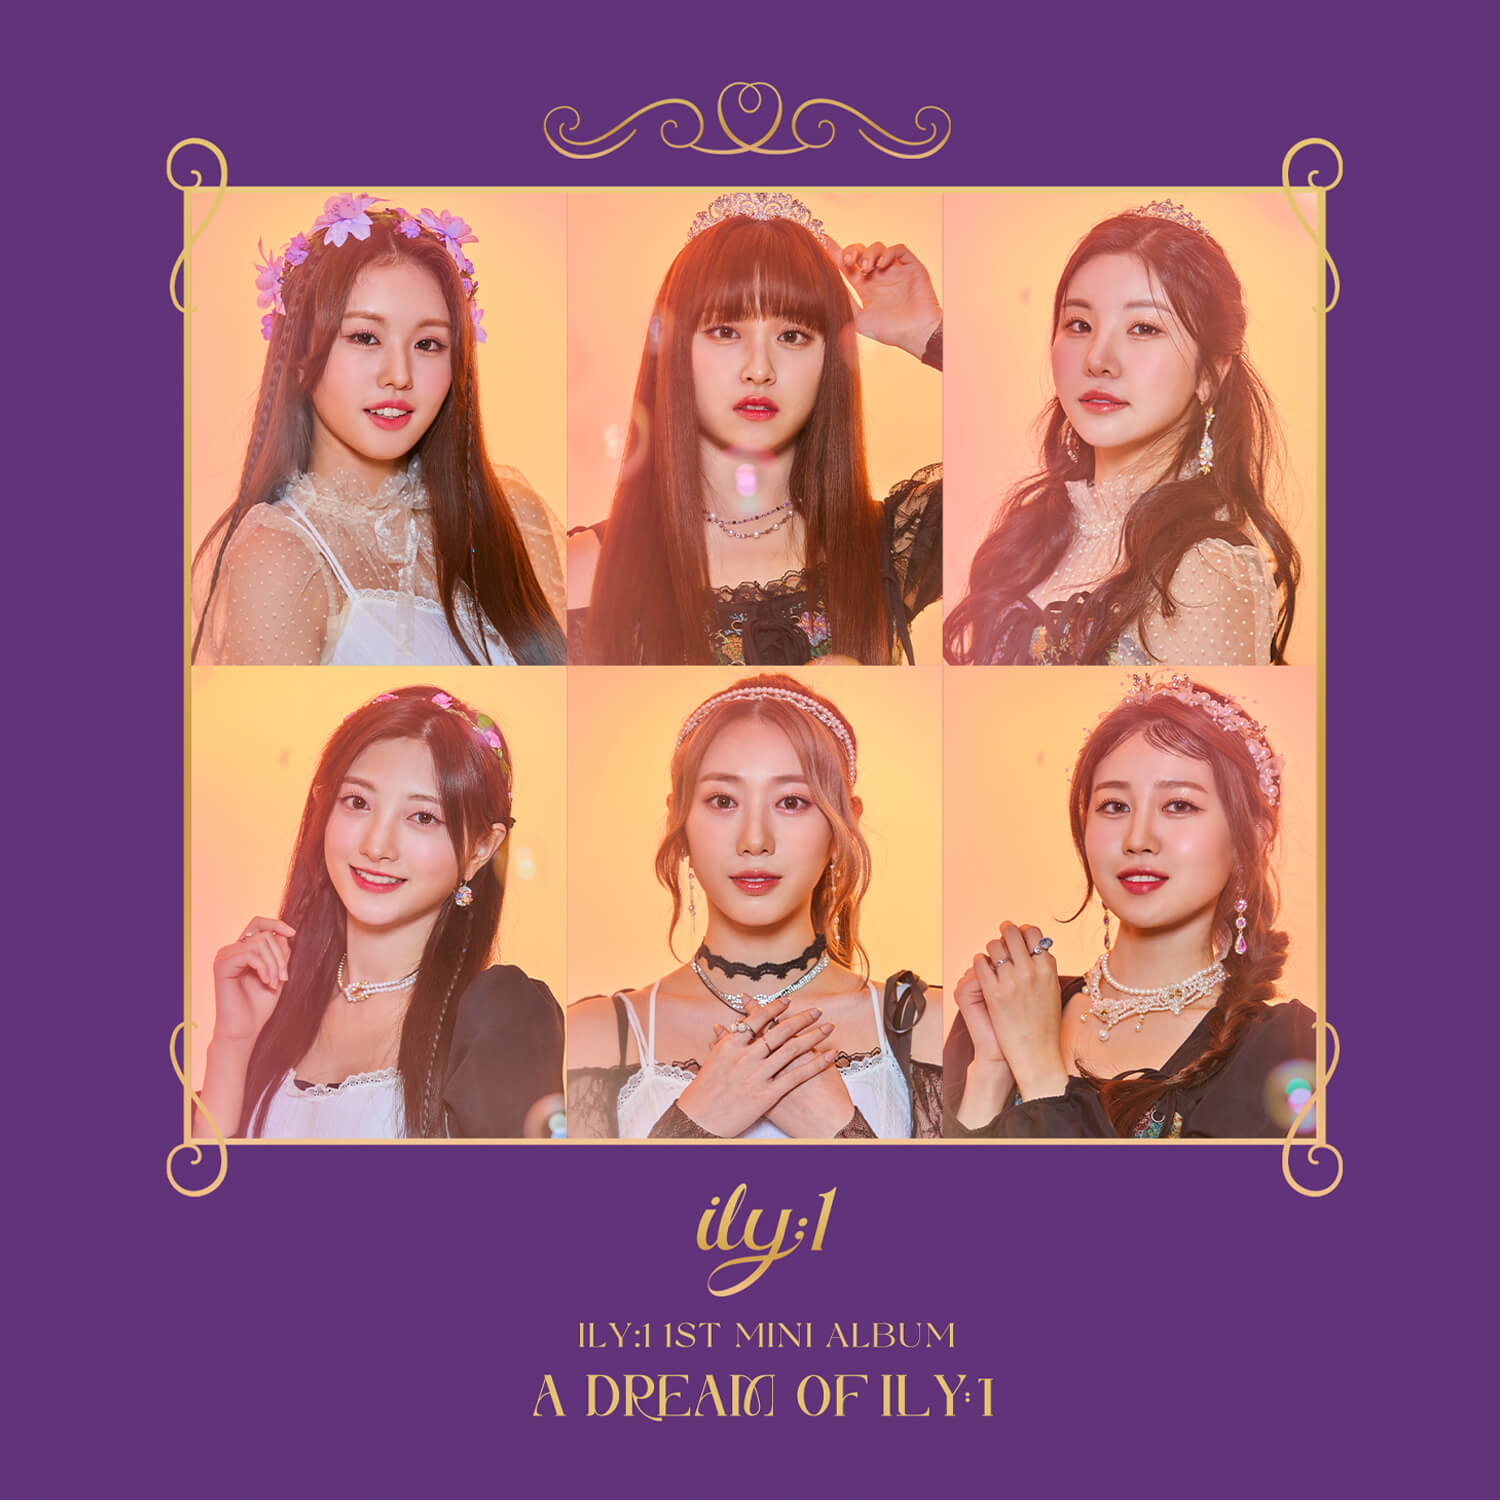 ILY:1 1st Mini Album A Dream of ILY:1